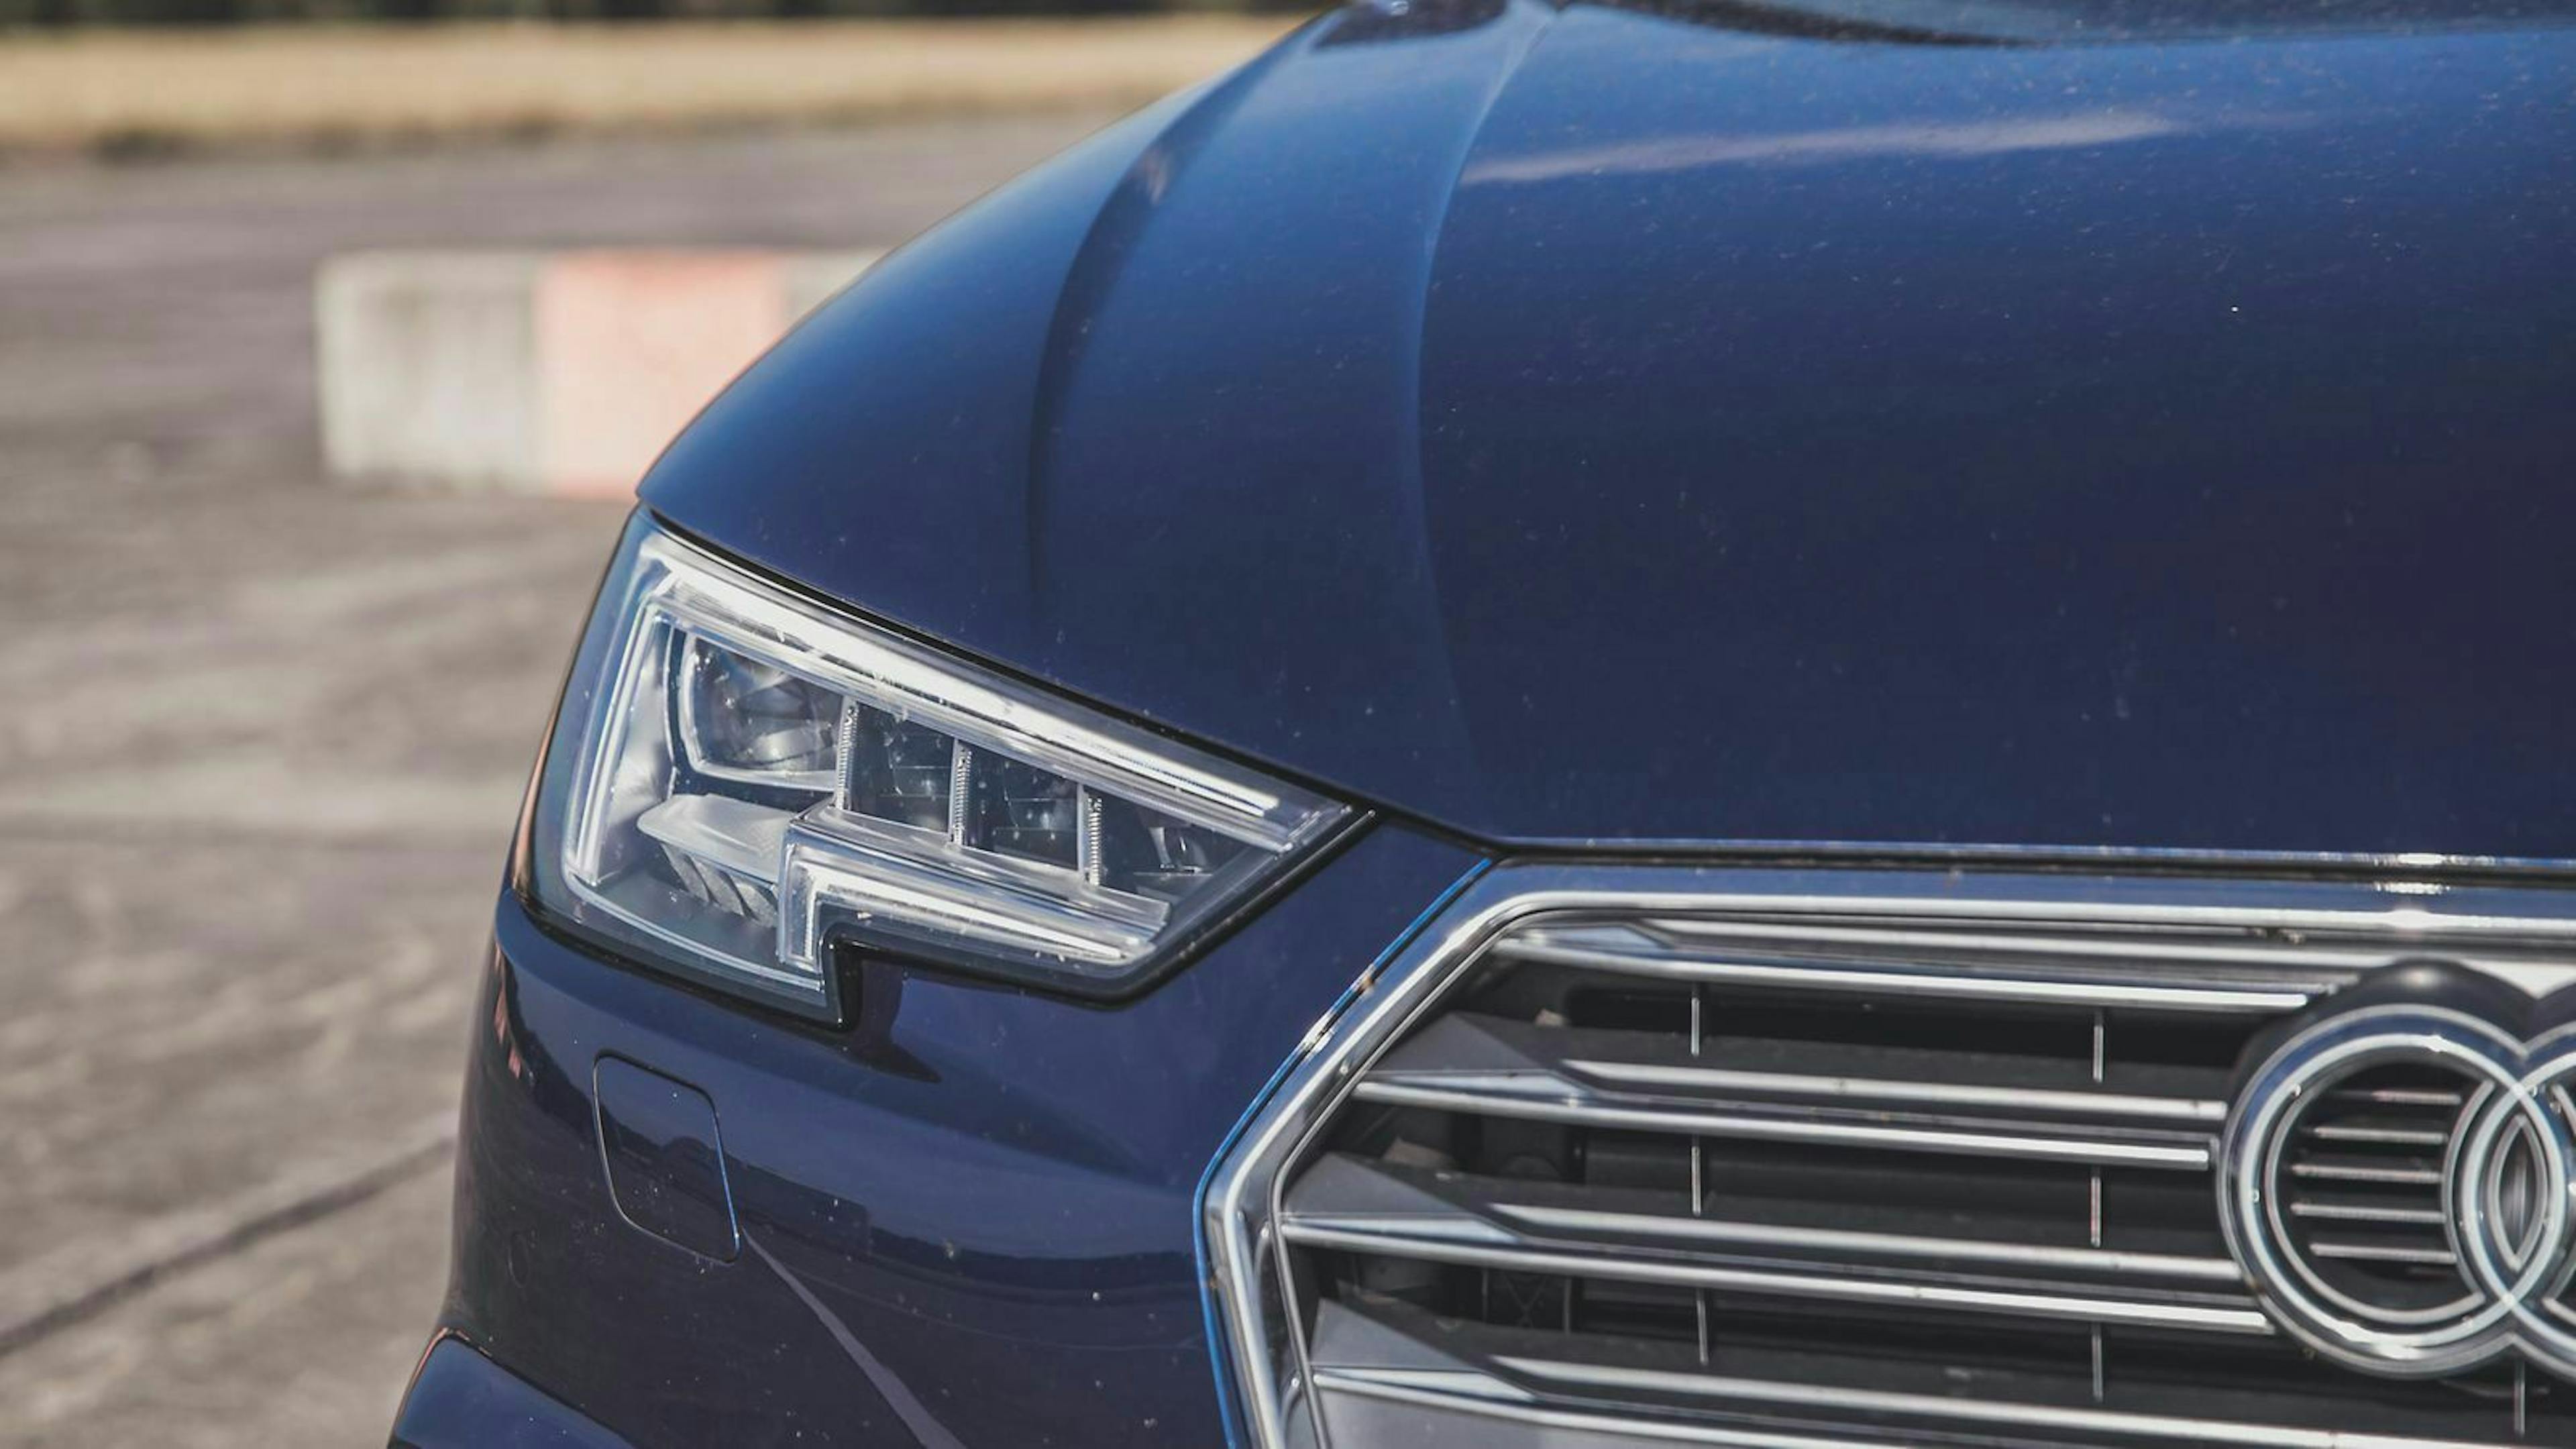 In sechs Jahren verkaufte Audi 18.500 Erdgas-Fahrzeuge